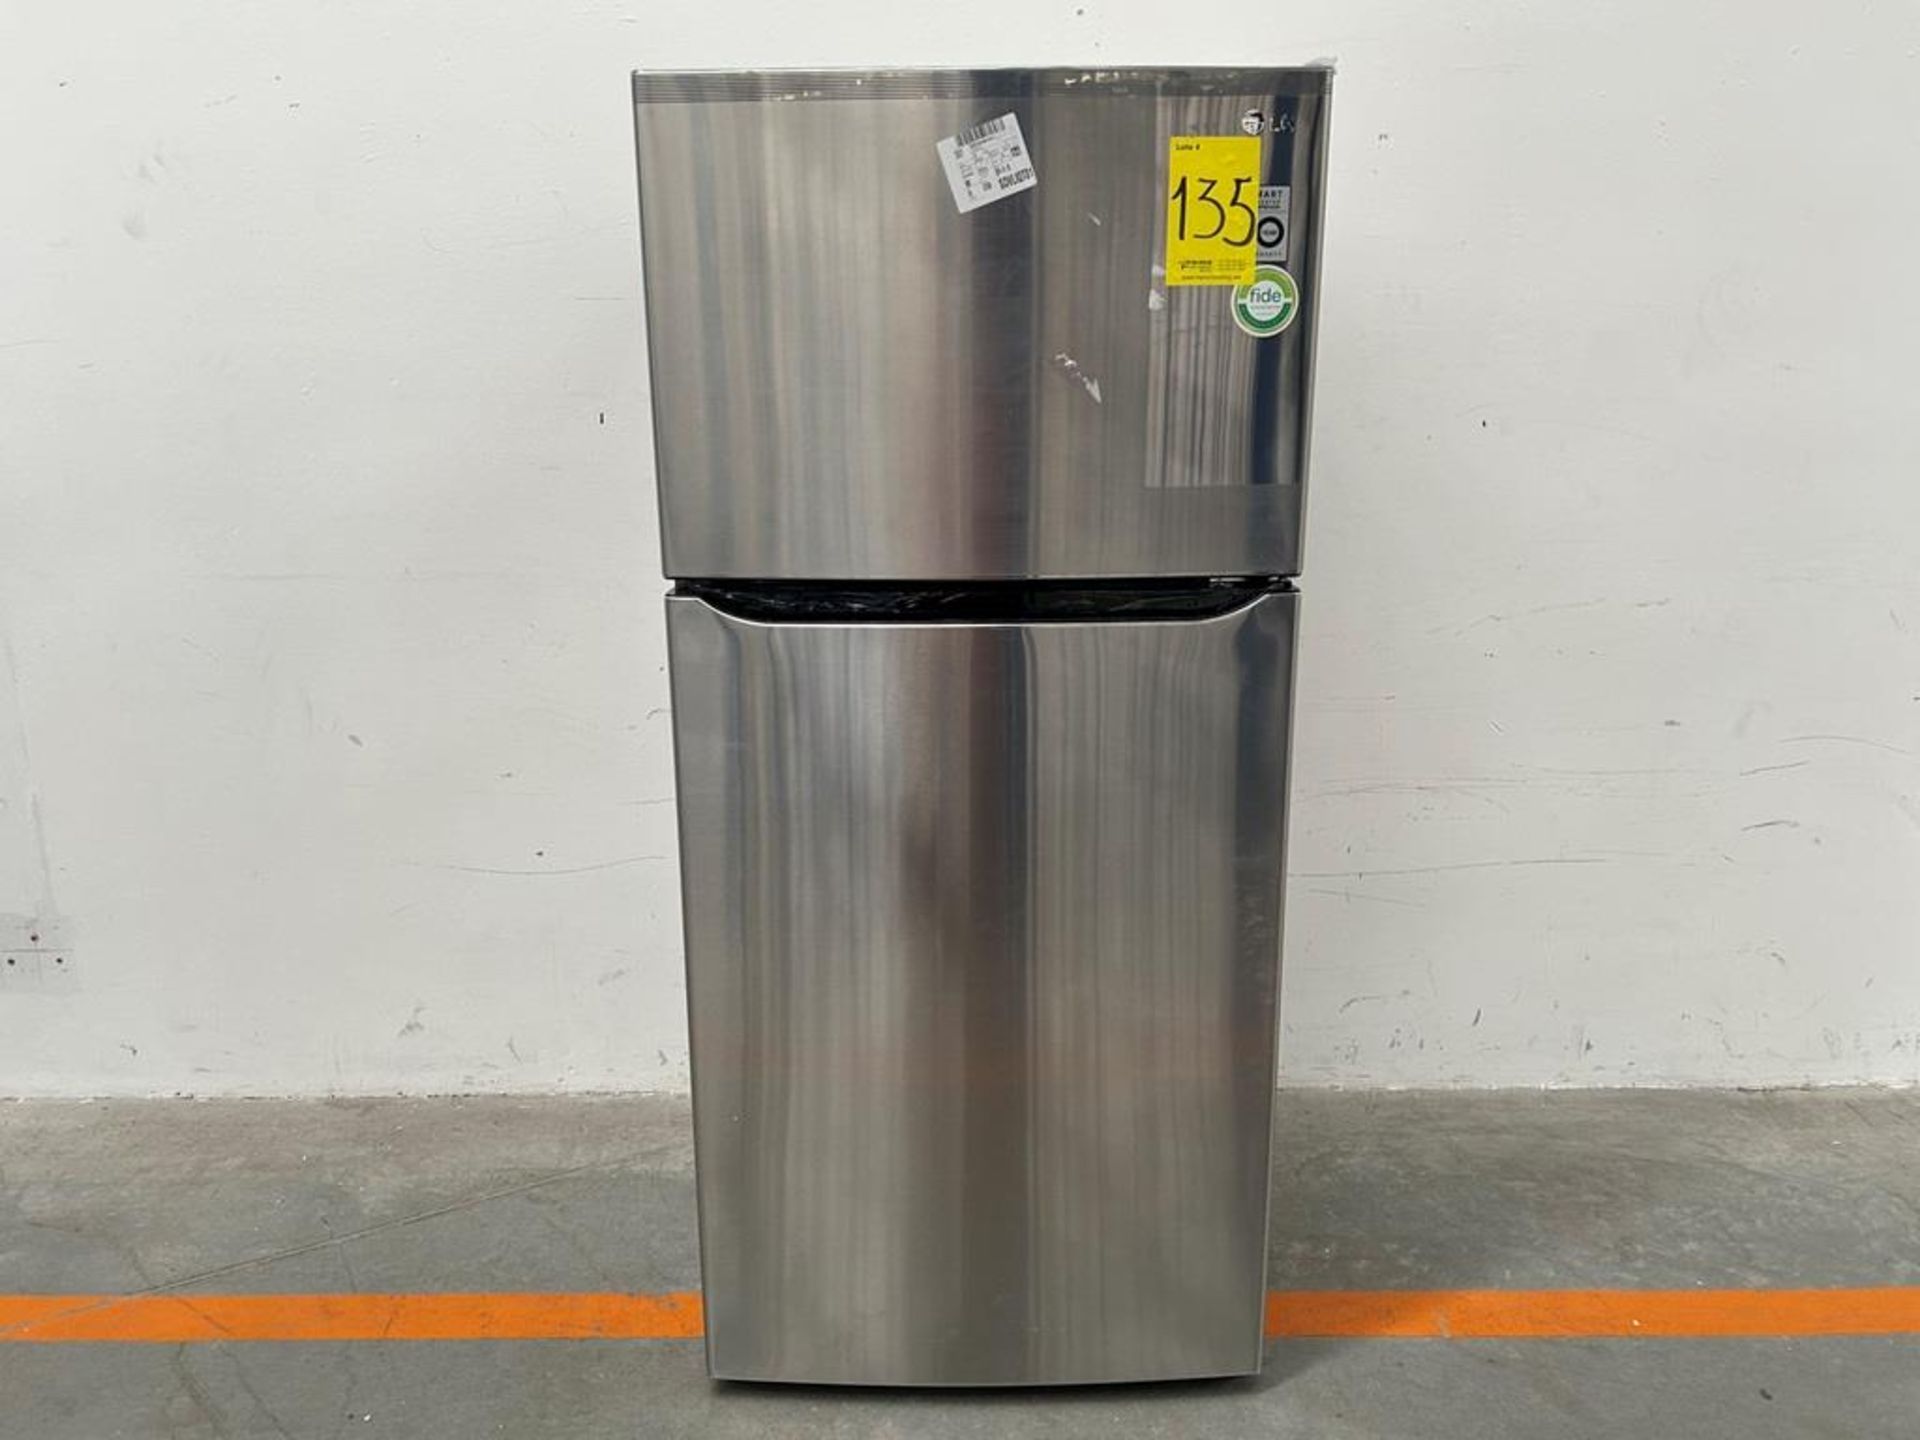 (NUEVO) Refrigerador Marca LG, Modelo LT57BPSX, Serie 1X171, Color GRIS